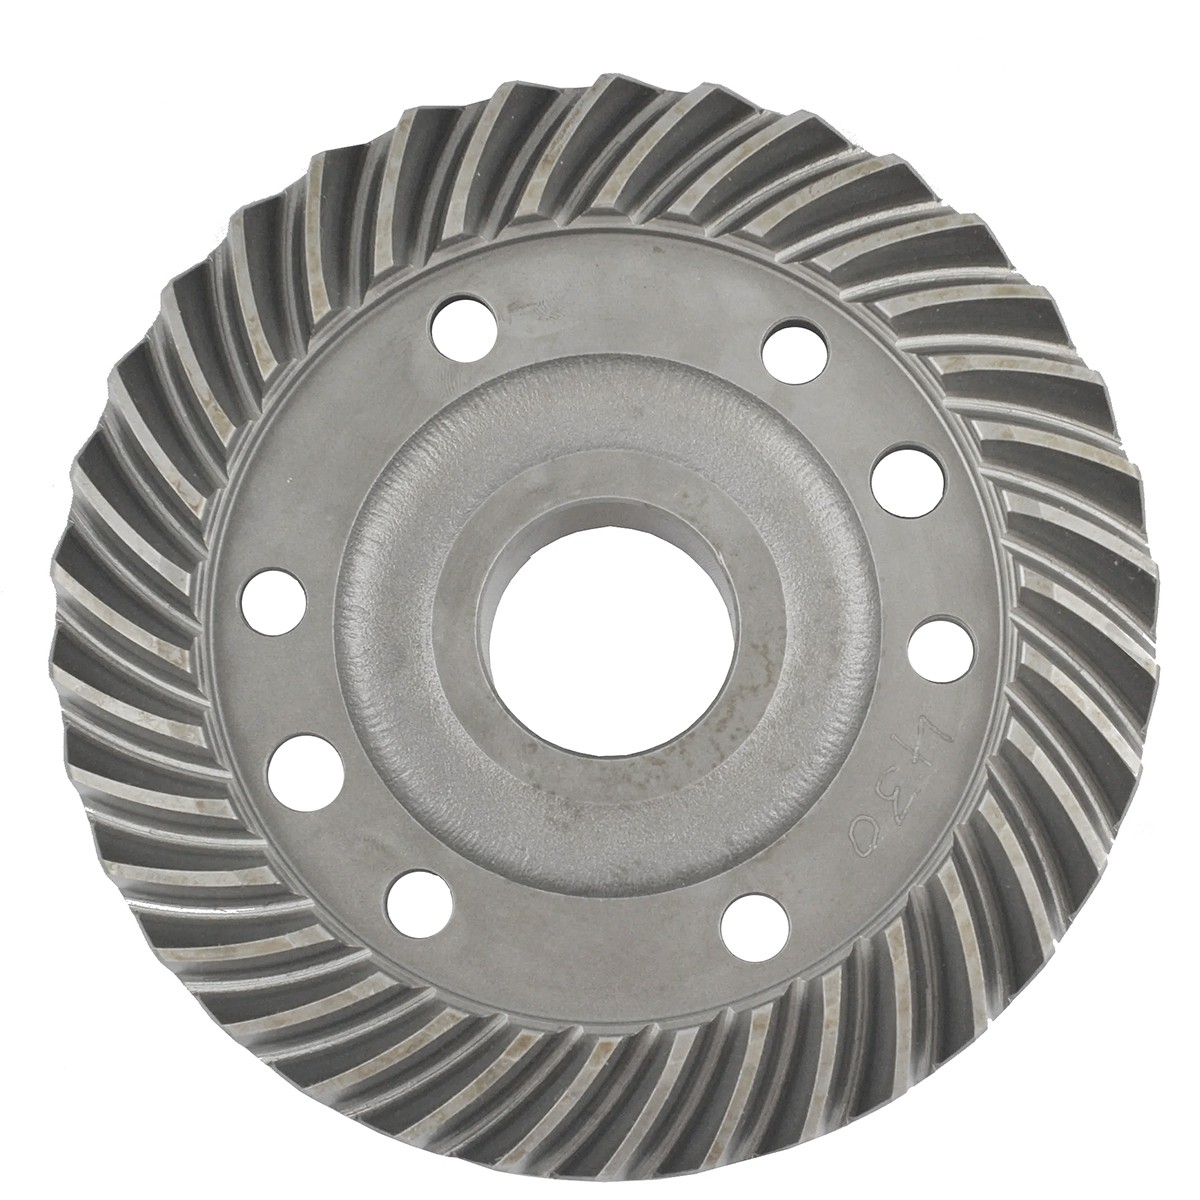 Disc wheel 34T / 180 mm / Kubota L01/L02/L2000 / 38440-4335-0 / 5-04-102-02